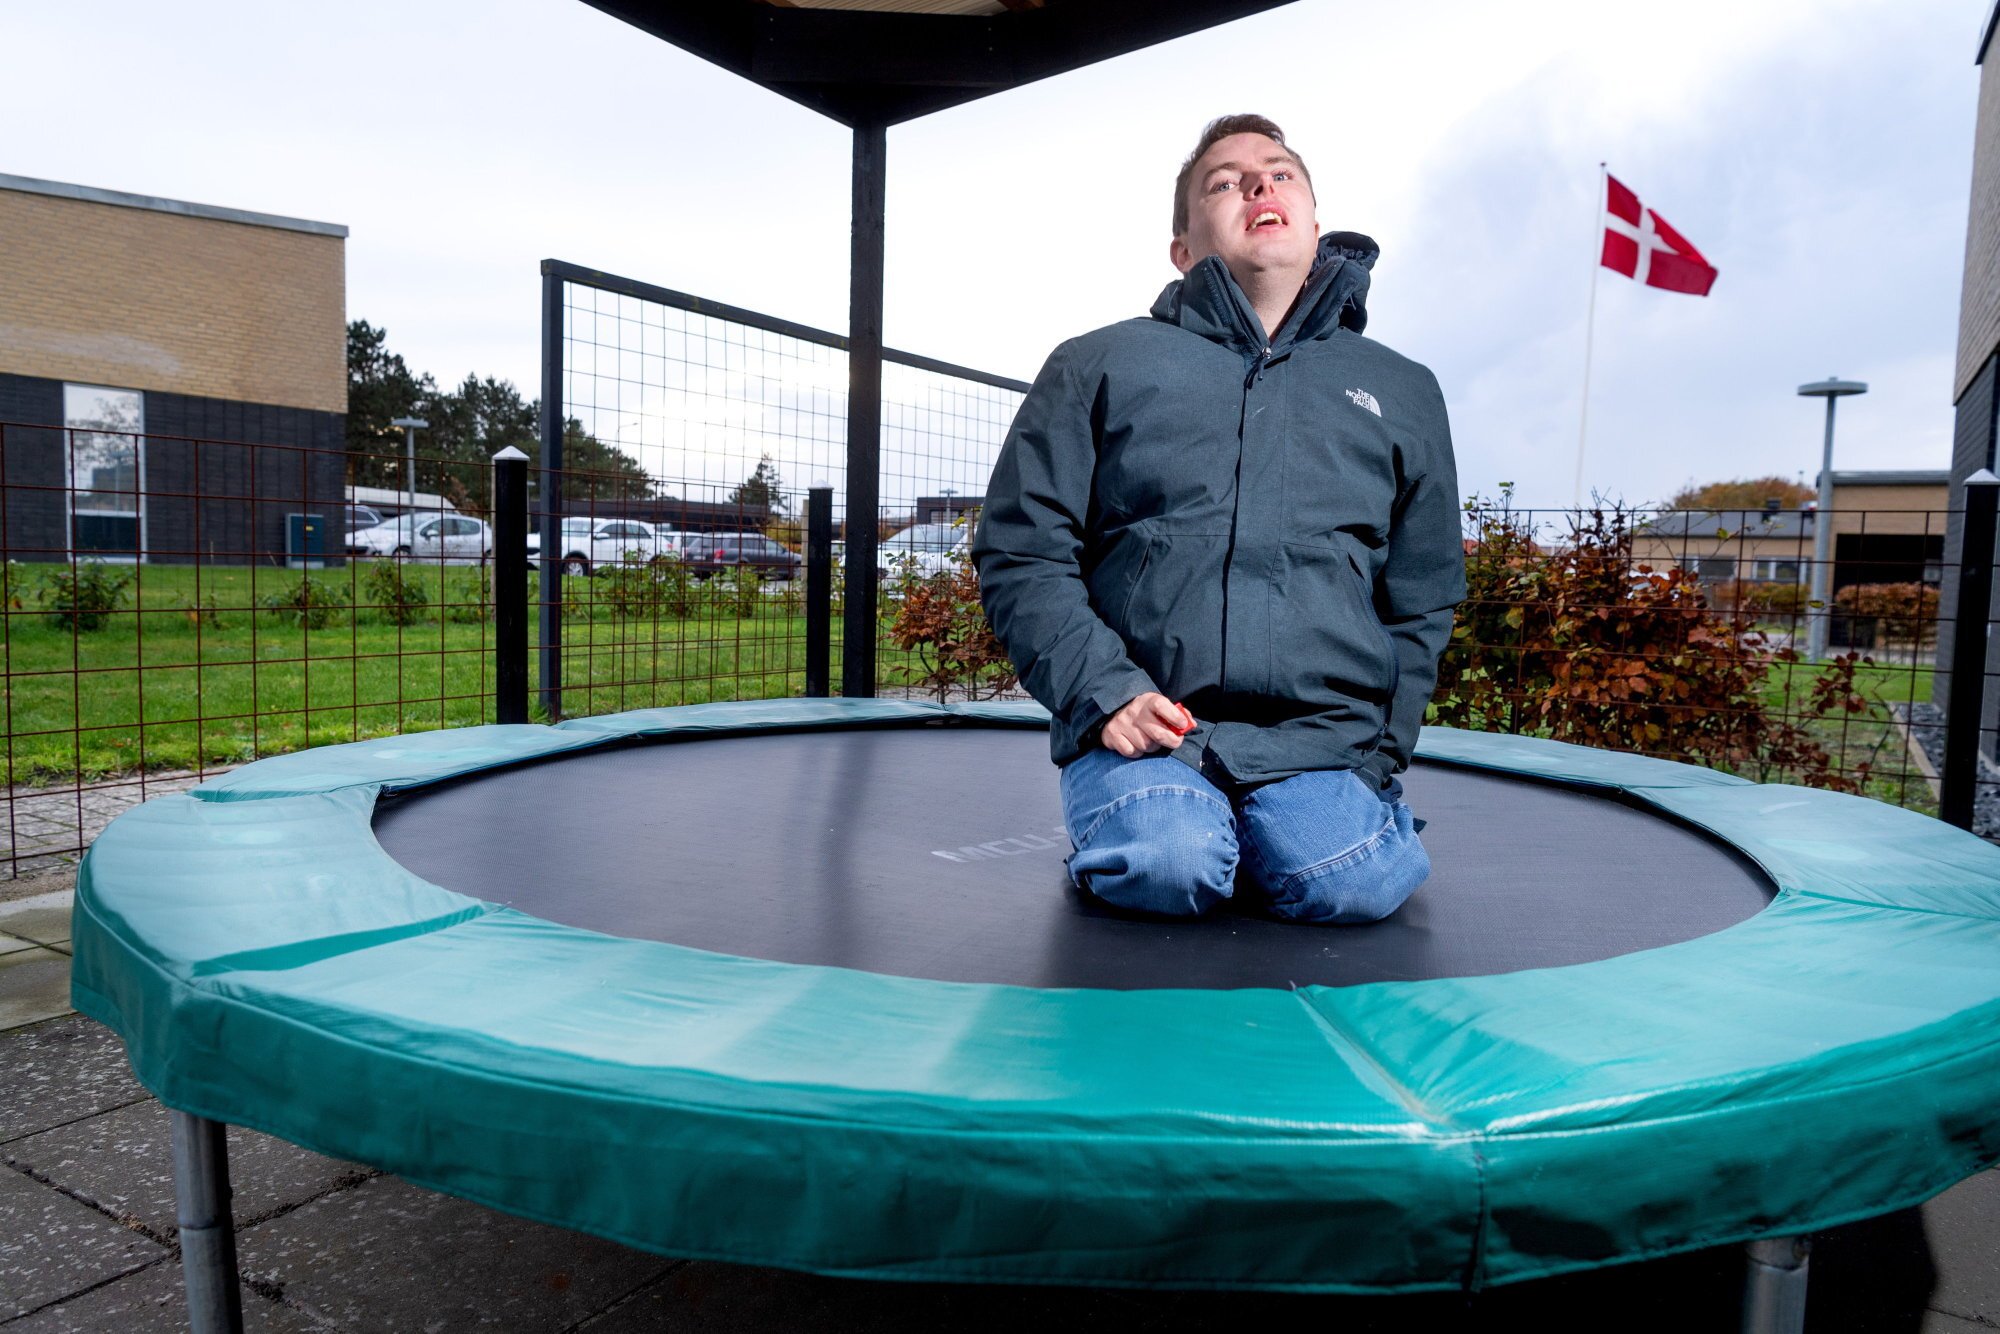 Rasmus vil bruge sin trampolin i blæsevejr: Skal betale 100.000 kroner først